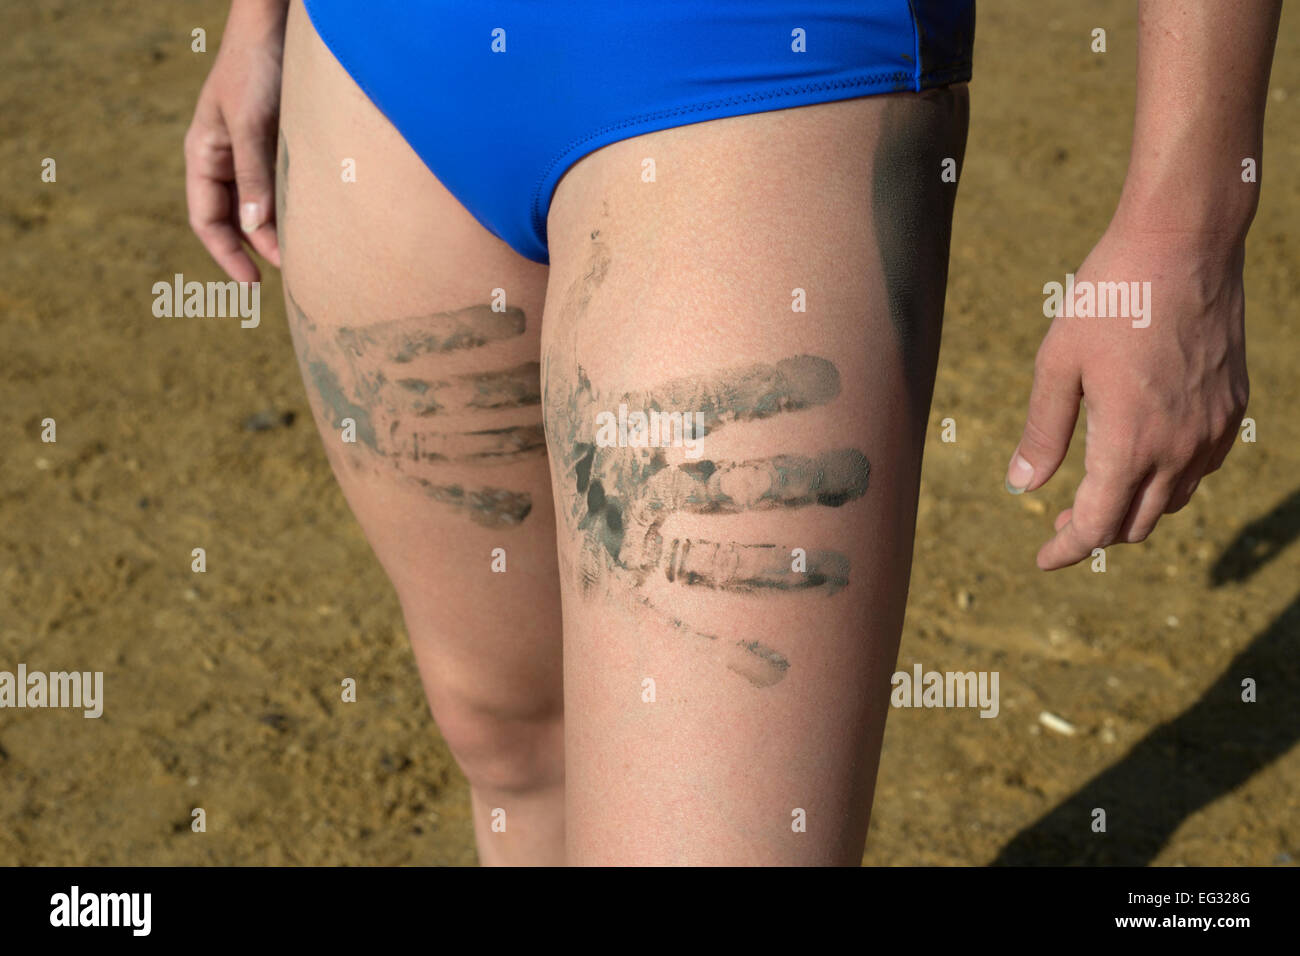 Giovane donna con fango palm consente di stampare sulle sue gambe modello rilasciato Foto Stock